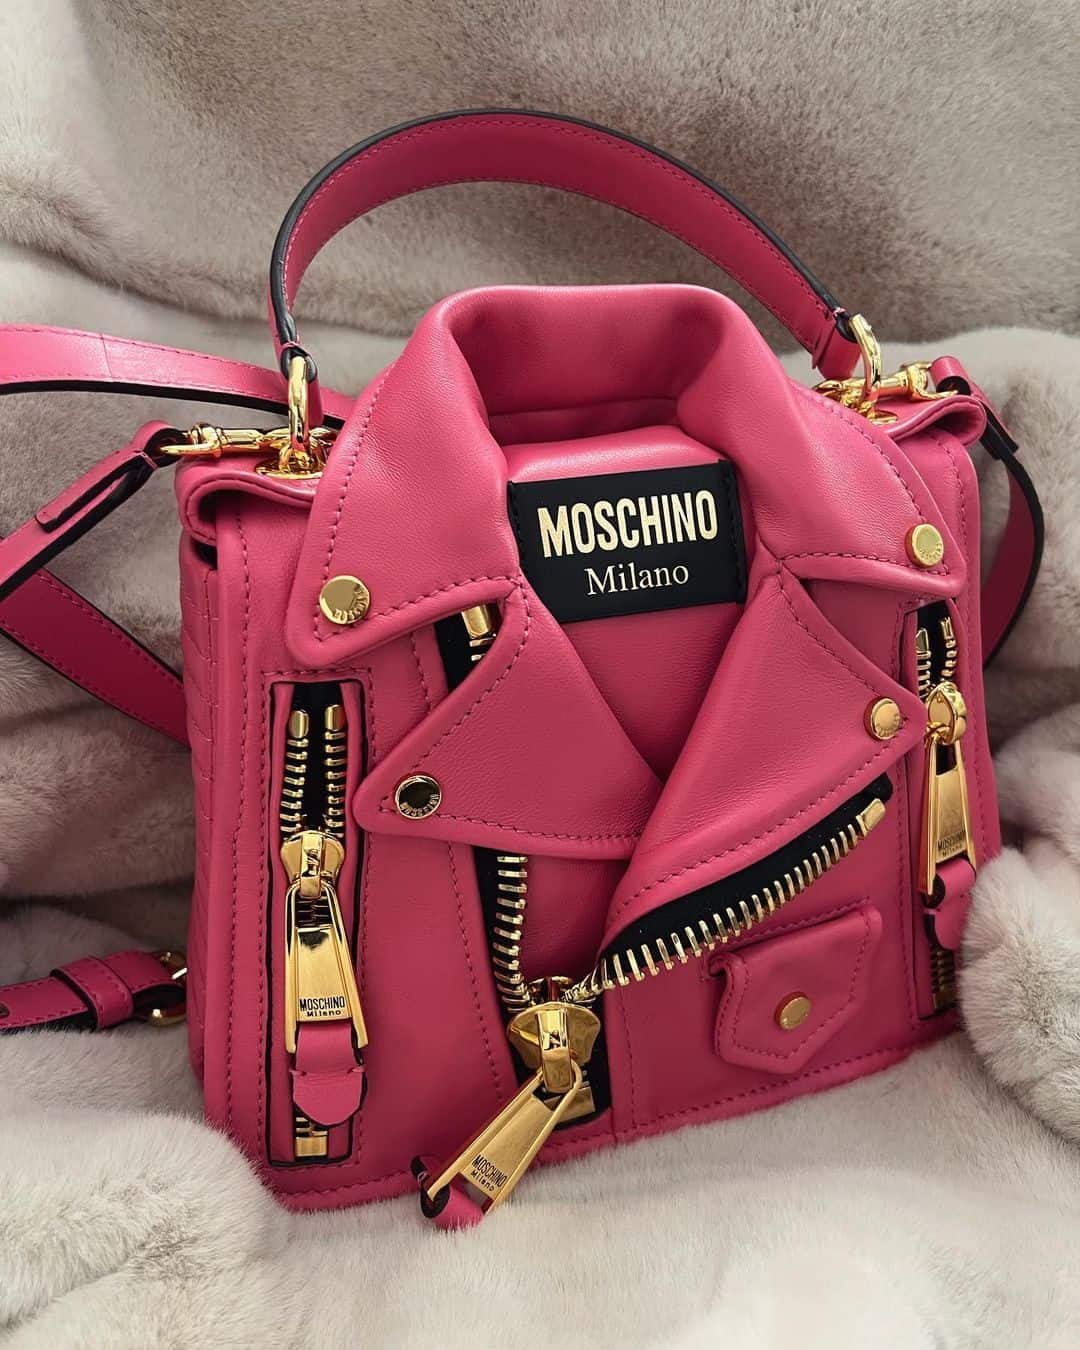 Moschino biker handbag pink